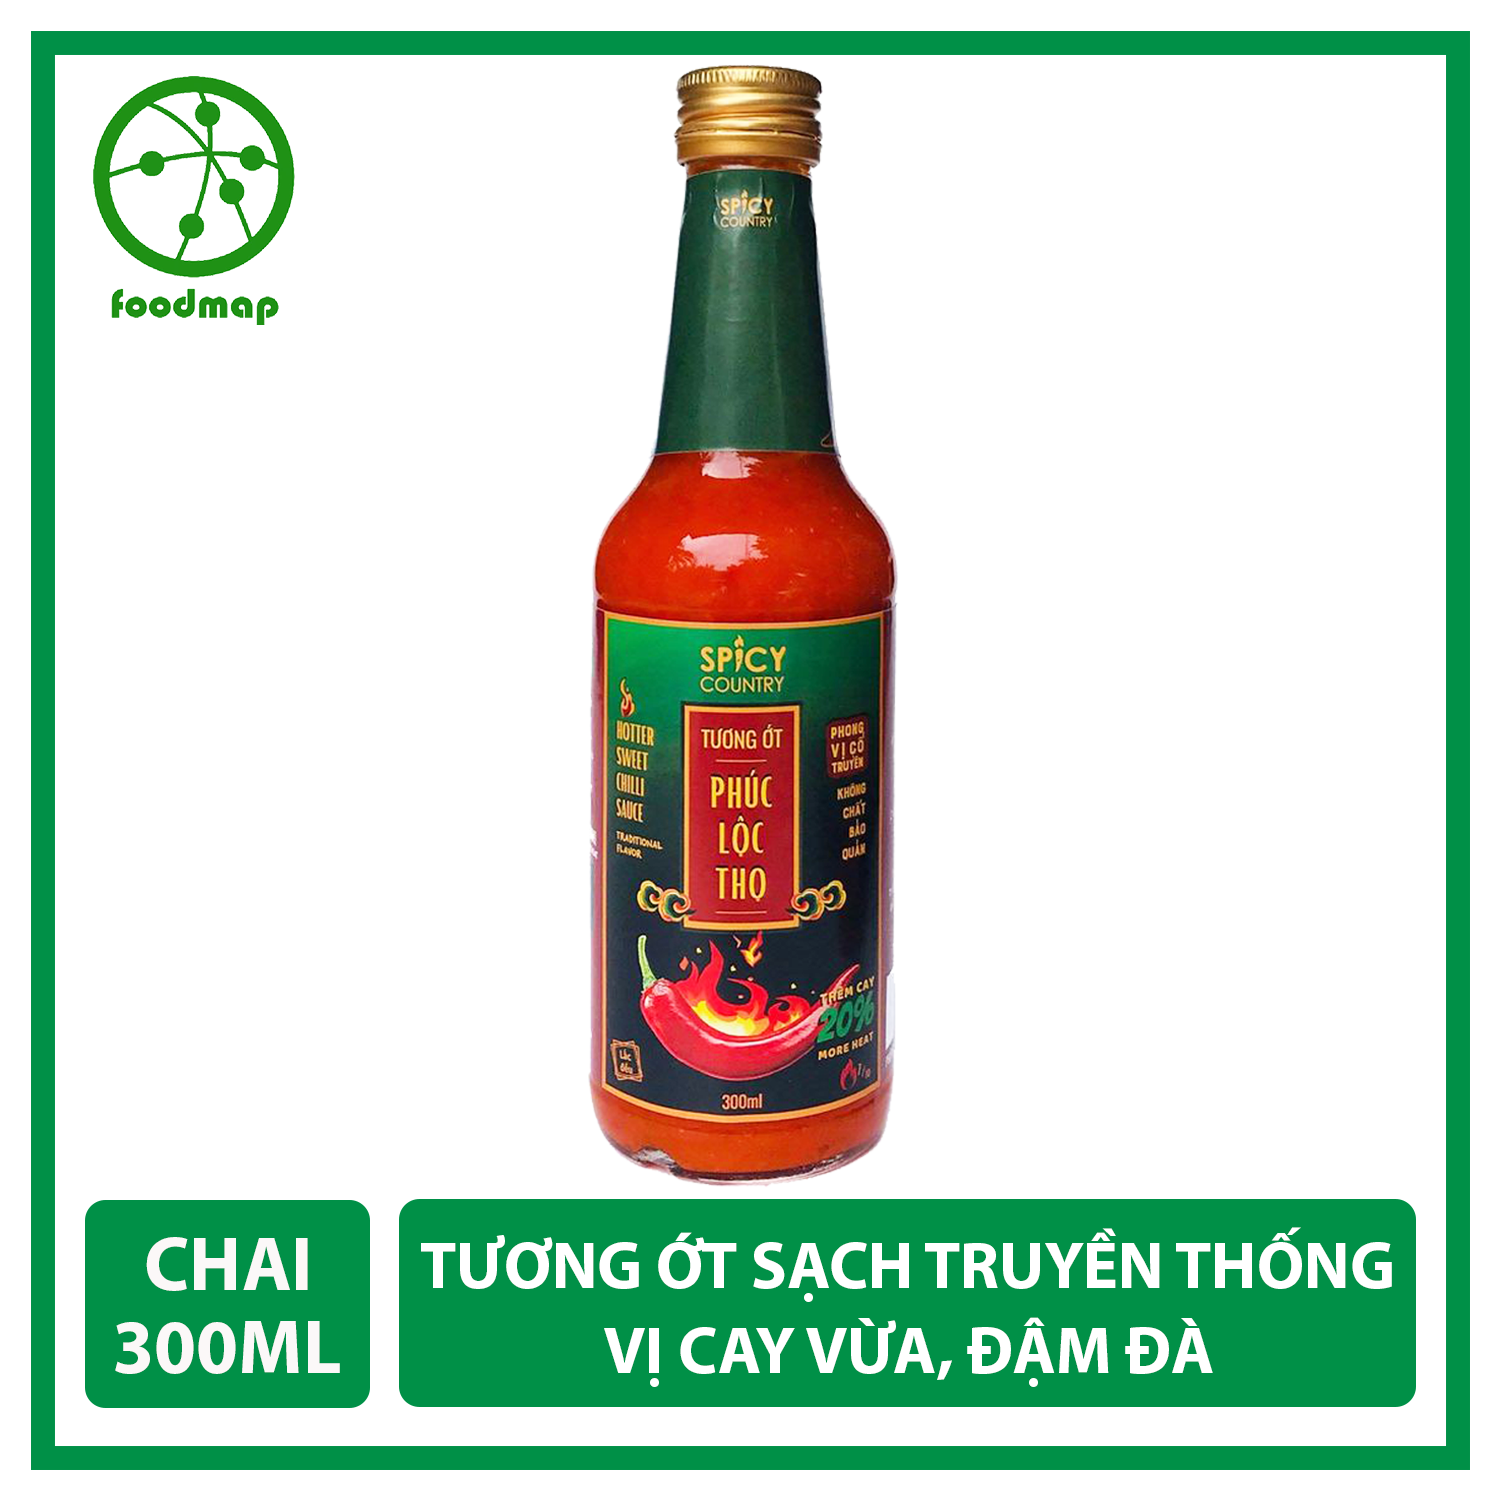 Tương Ớt Sạch Phúc Lộc Thọ Spicy Country Vị Cay Vừa, Đậm Đà - Chai 300ml